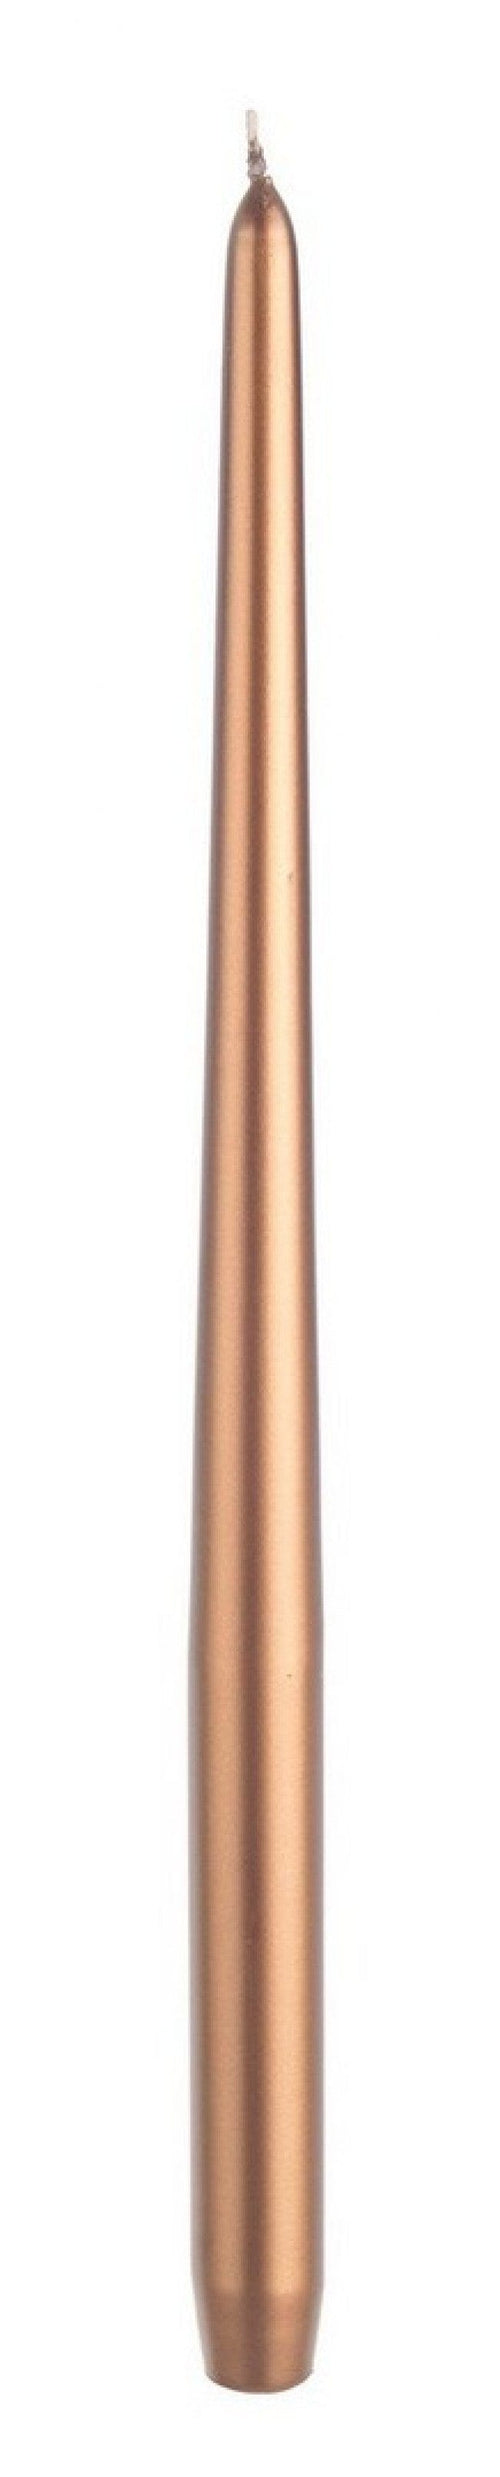 Bizzotto Lumanare conica Basic Tall Cupru, Ø2,5xH40 cm